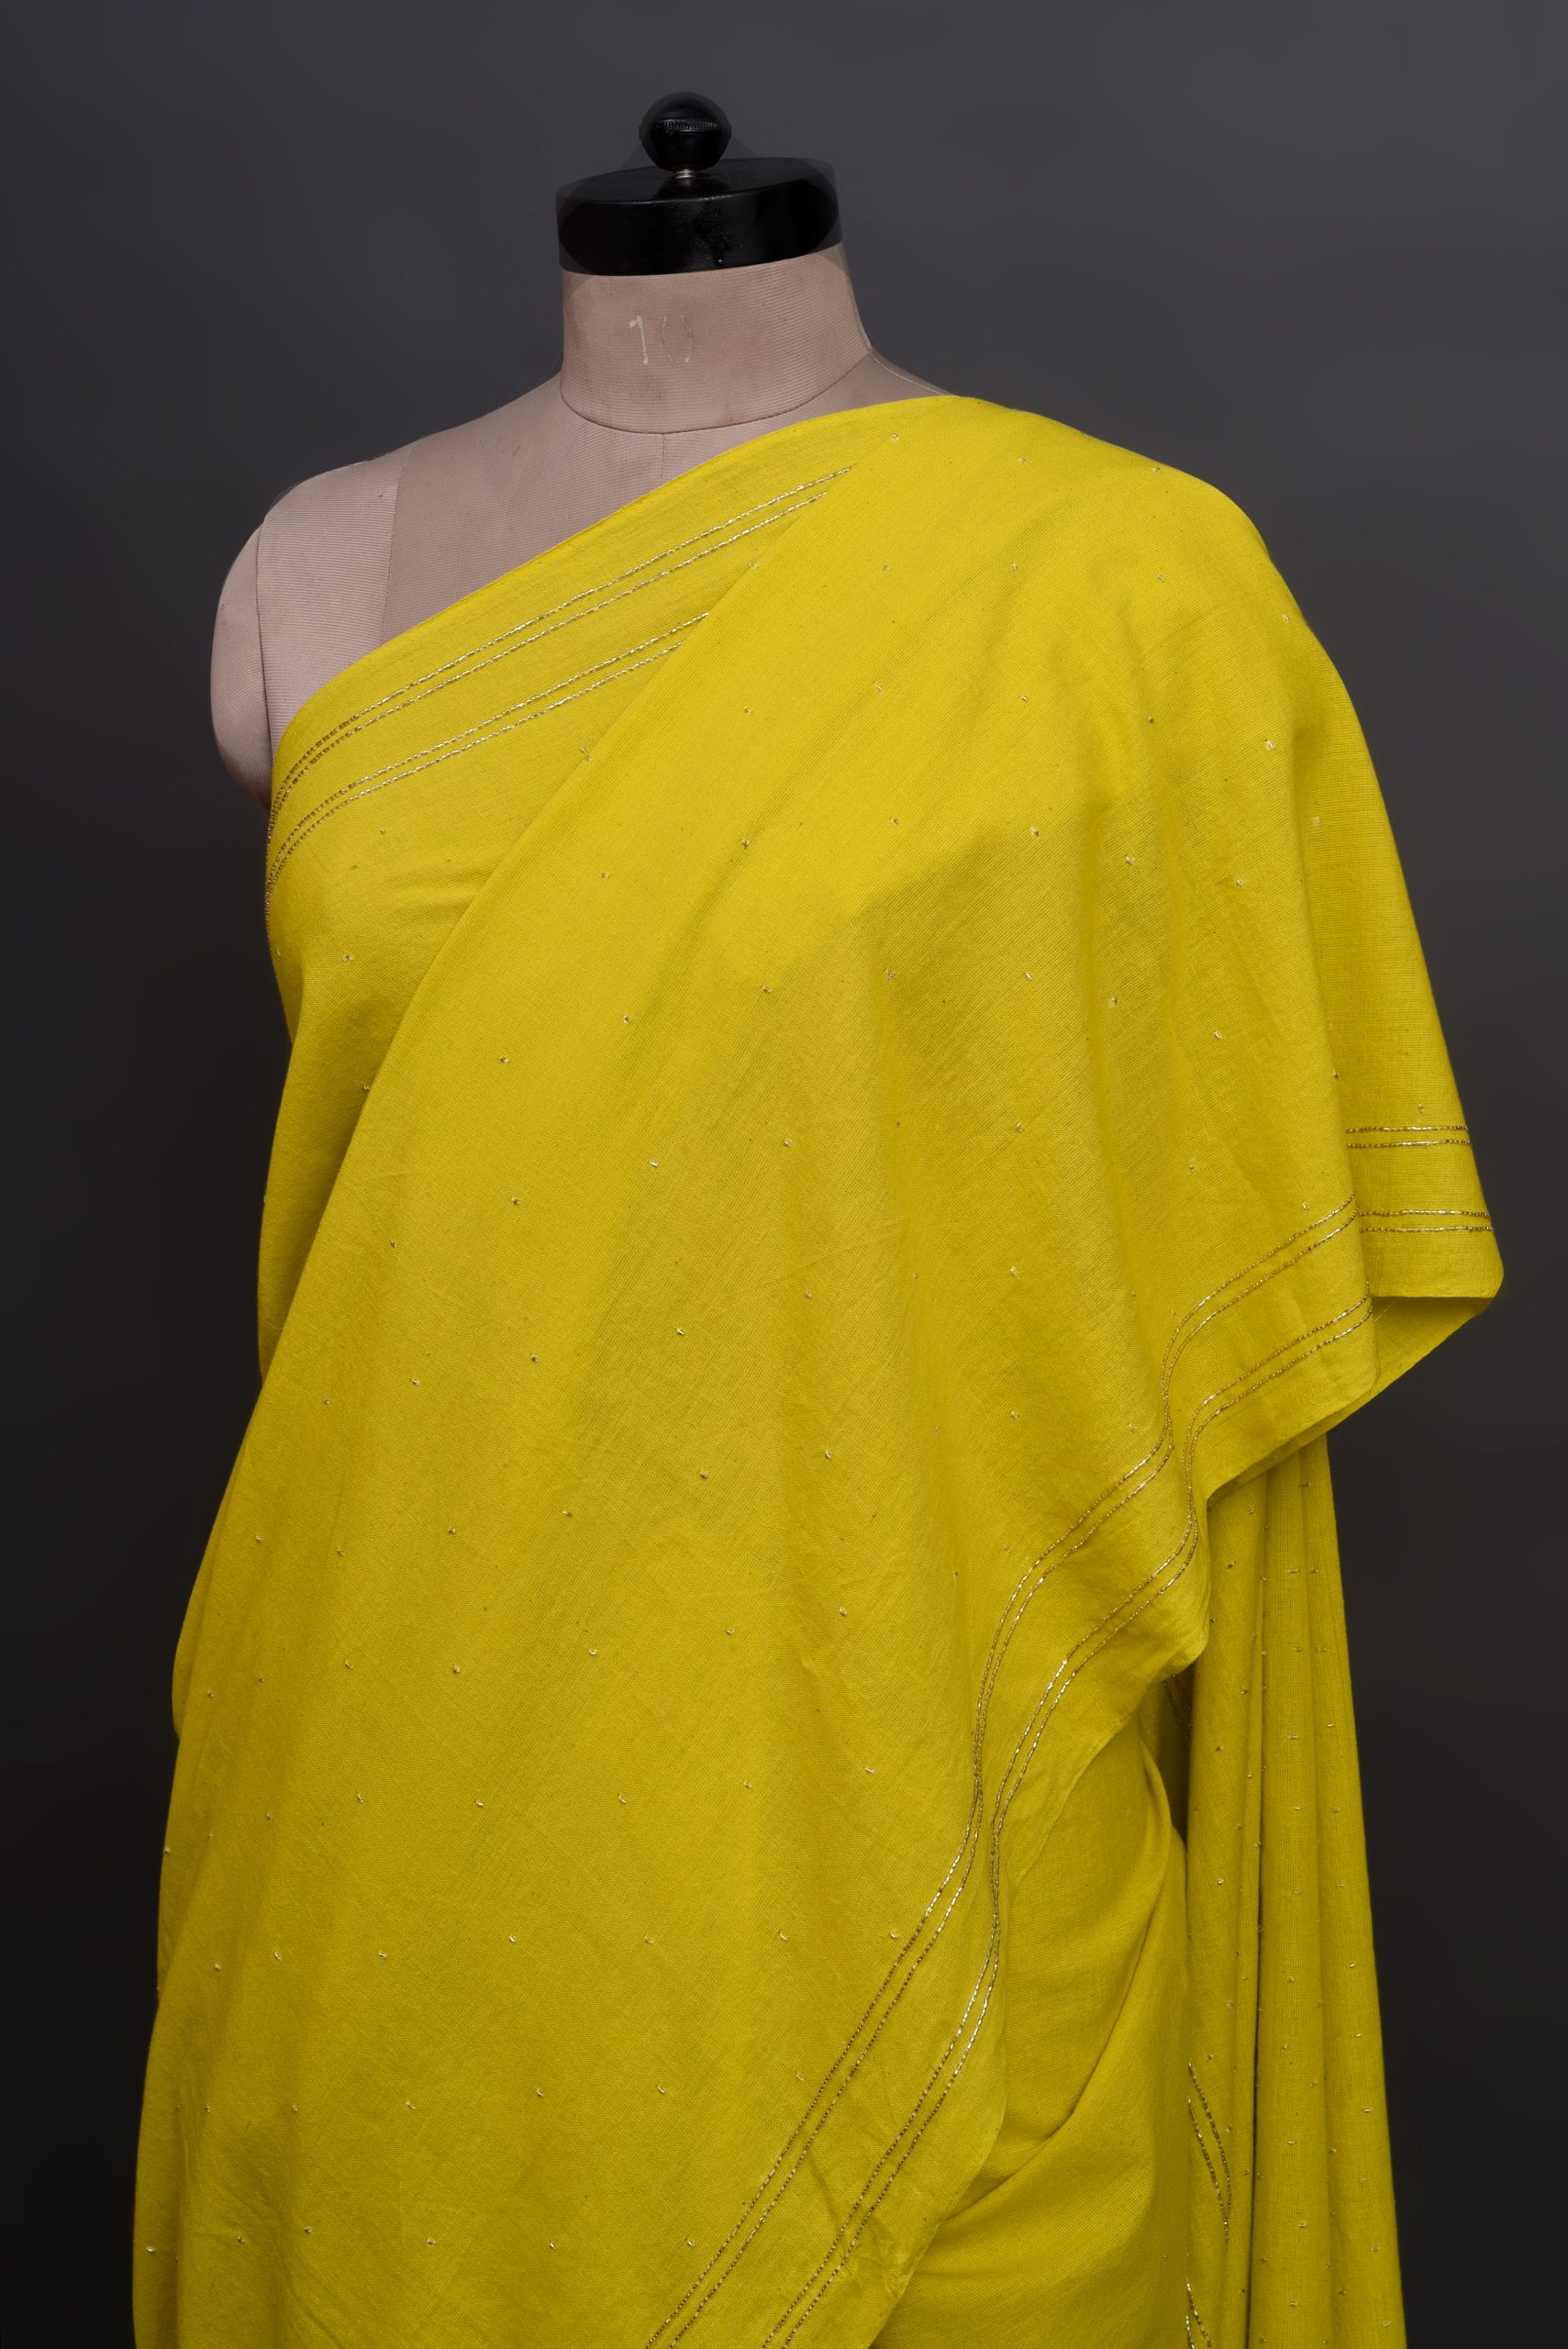 The Winny yellow sari